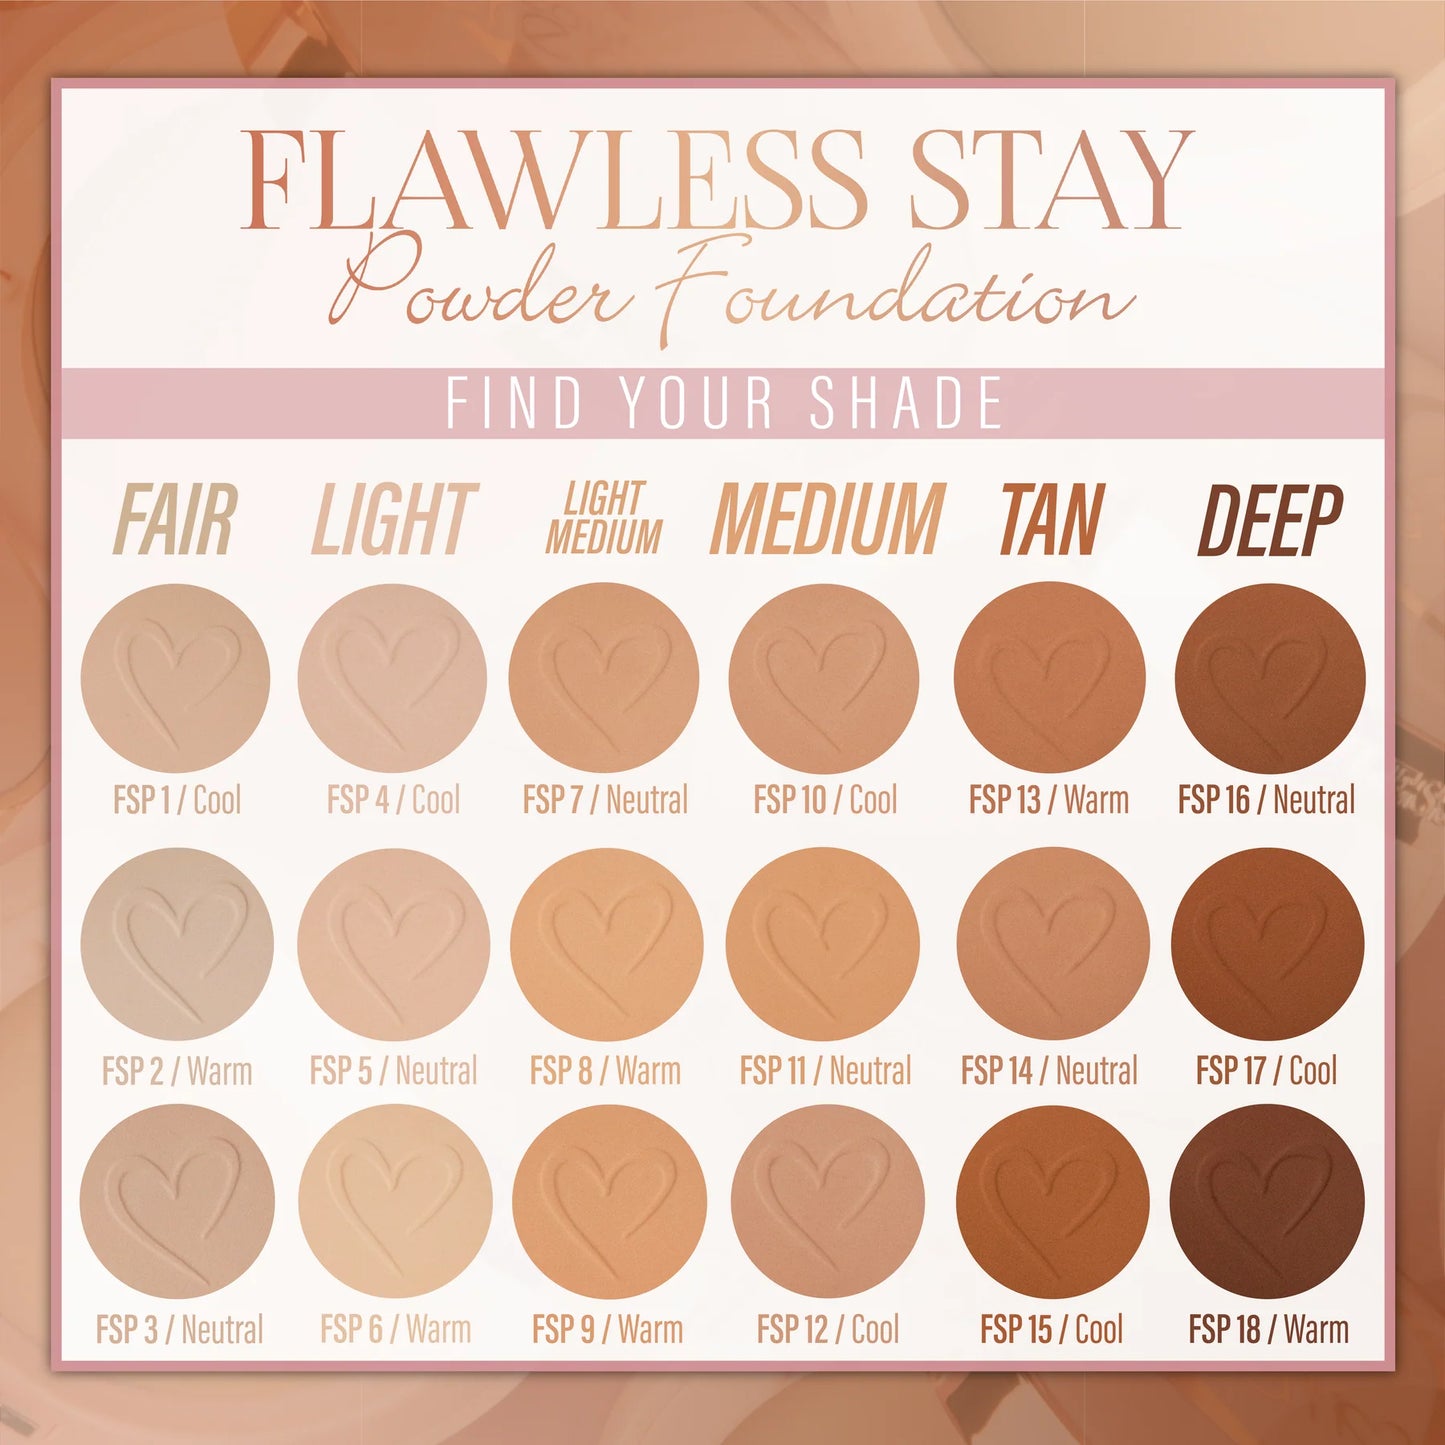 10.0 - Flawless Stay Powder Foundation